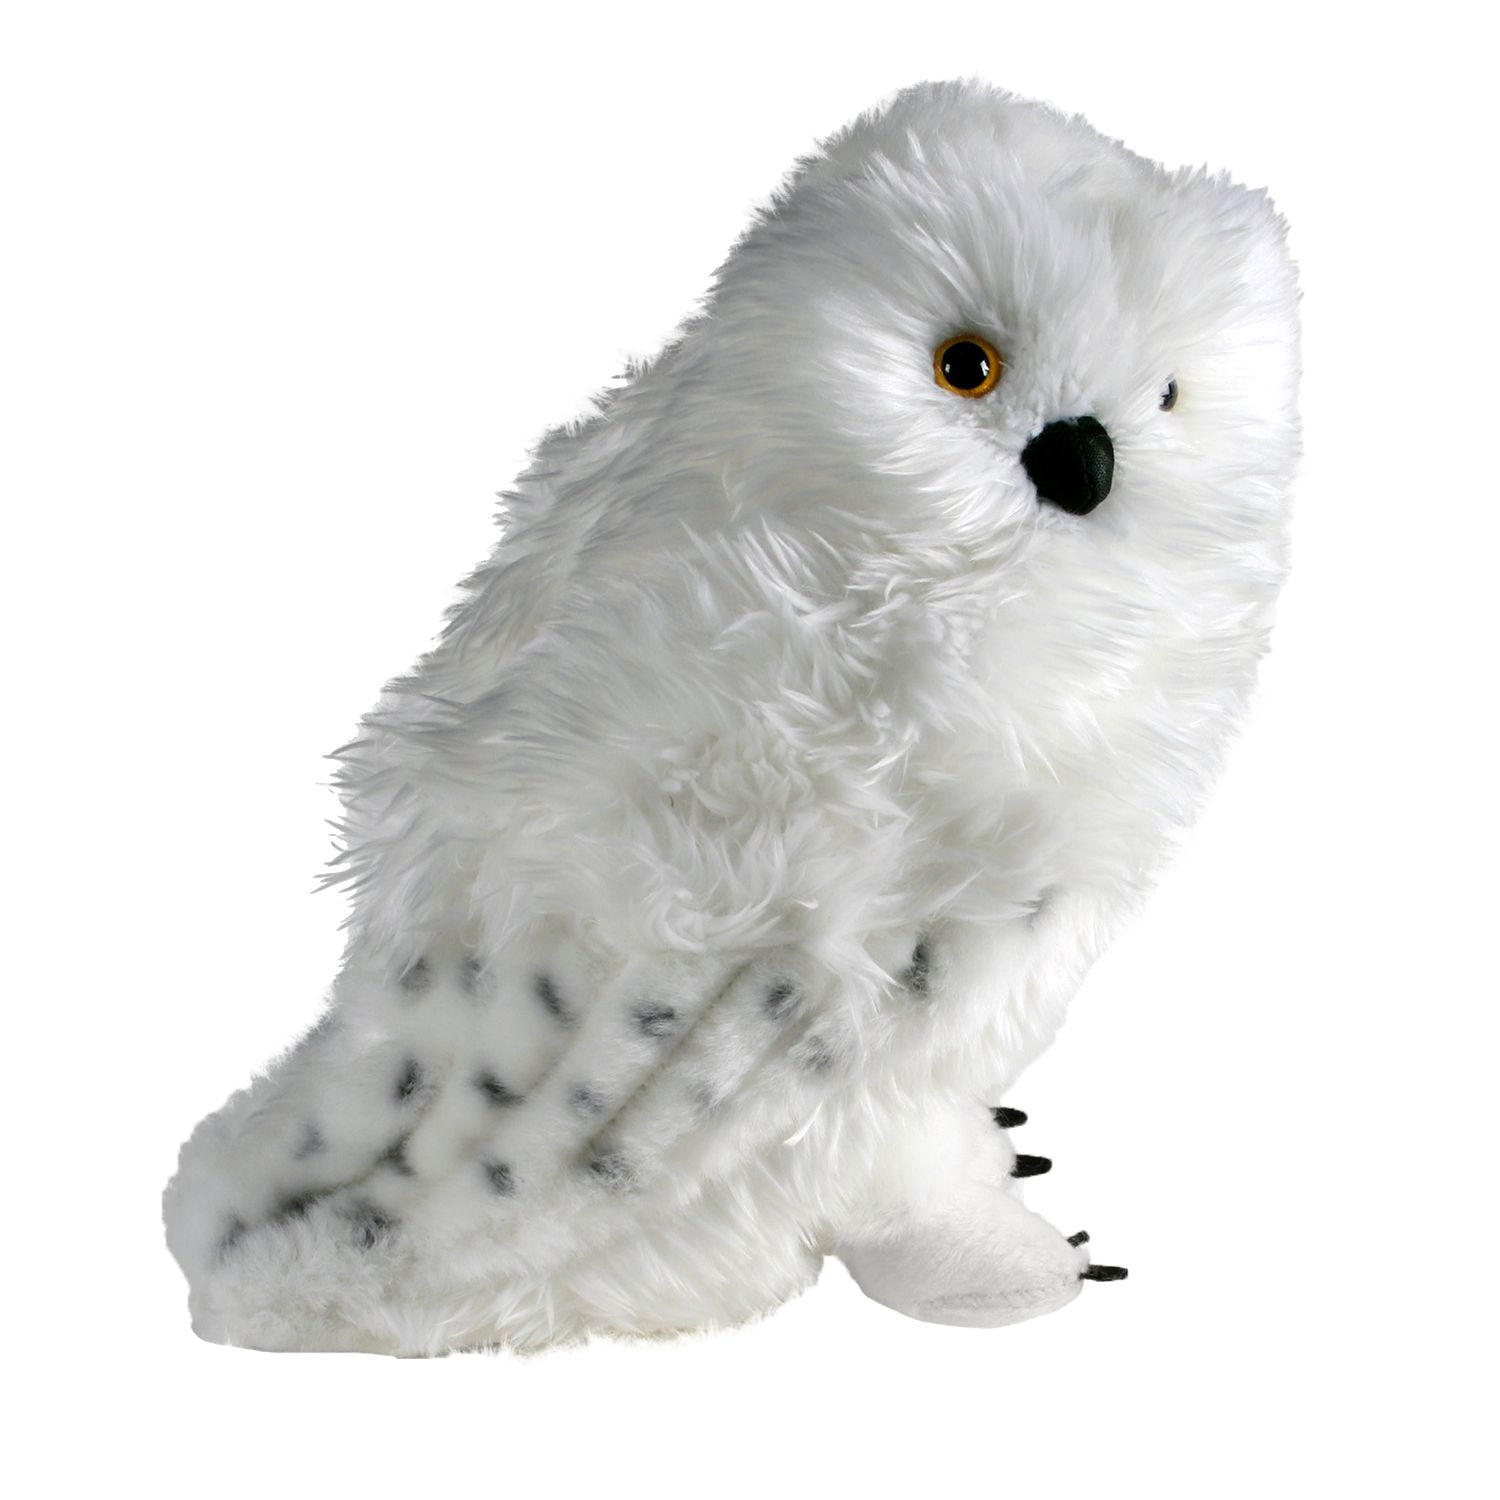 stuffed hedwig owl